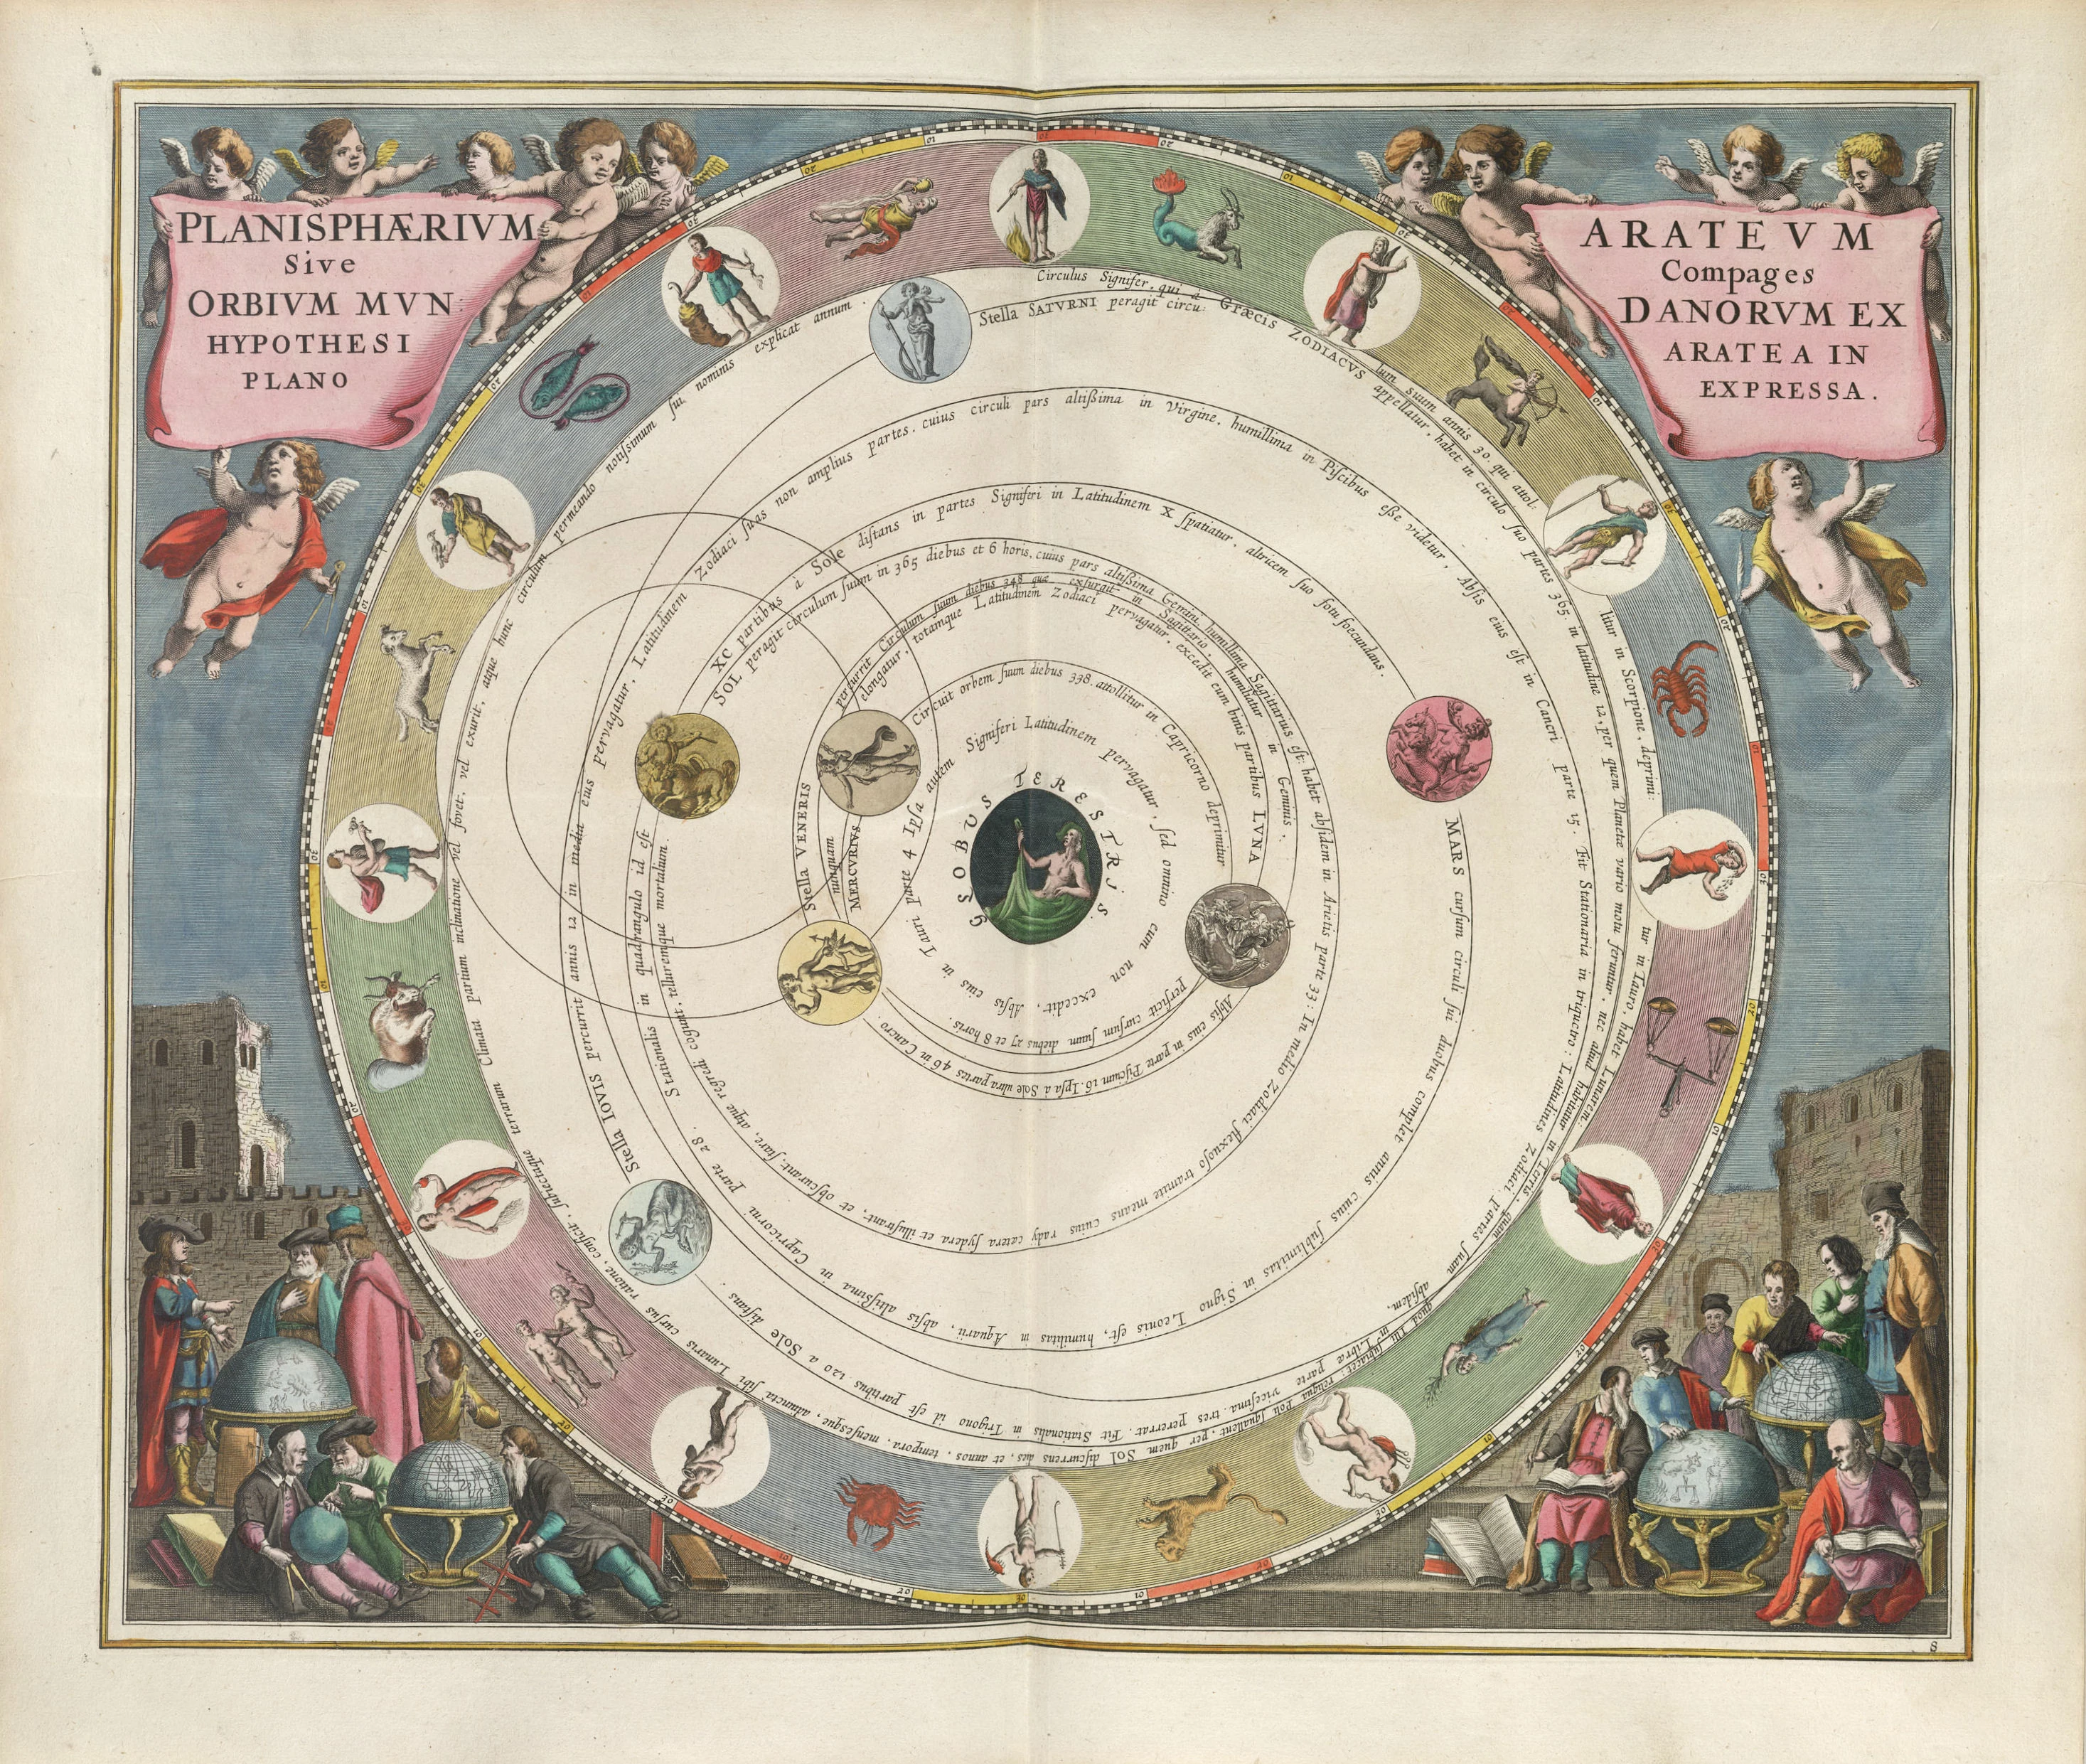 The Planisphere of Aratus, Andreas Cellarius